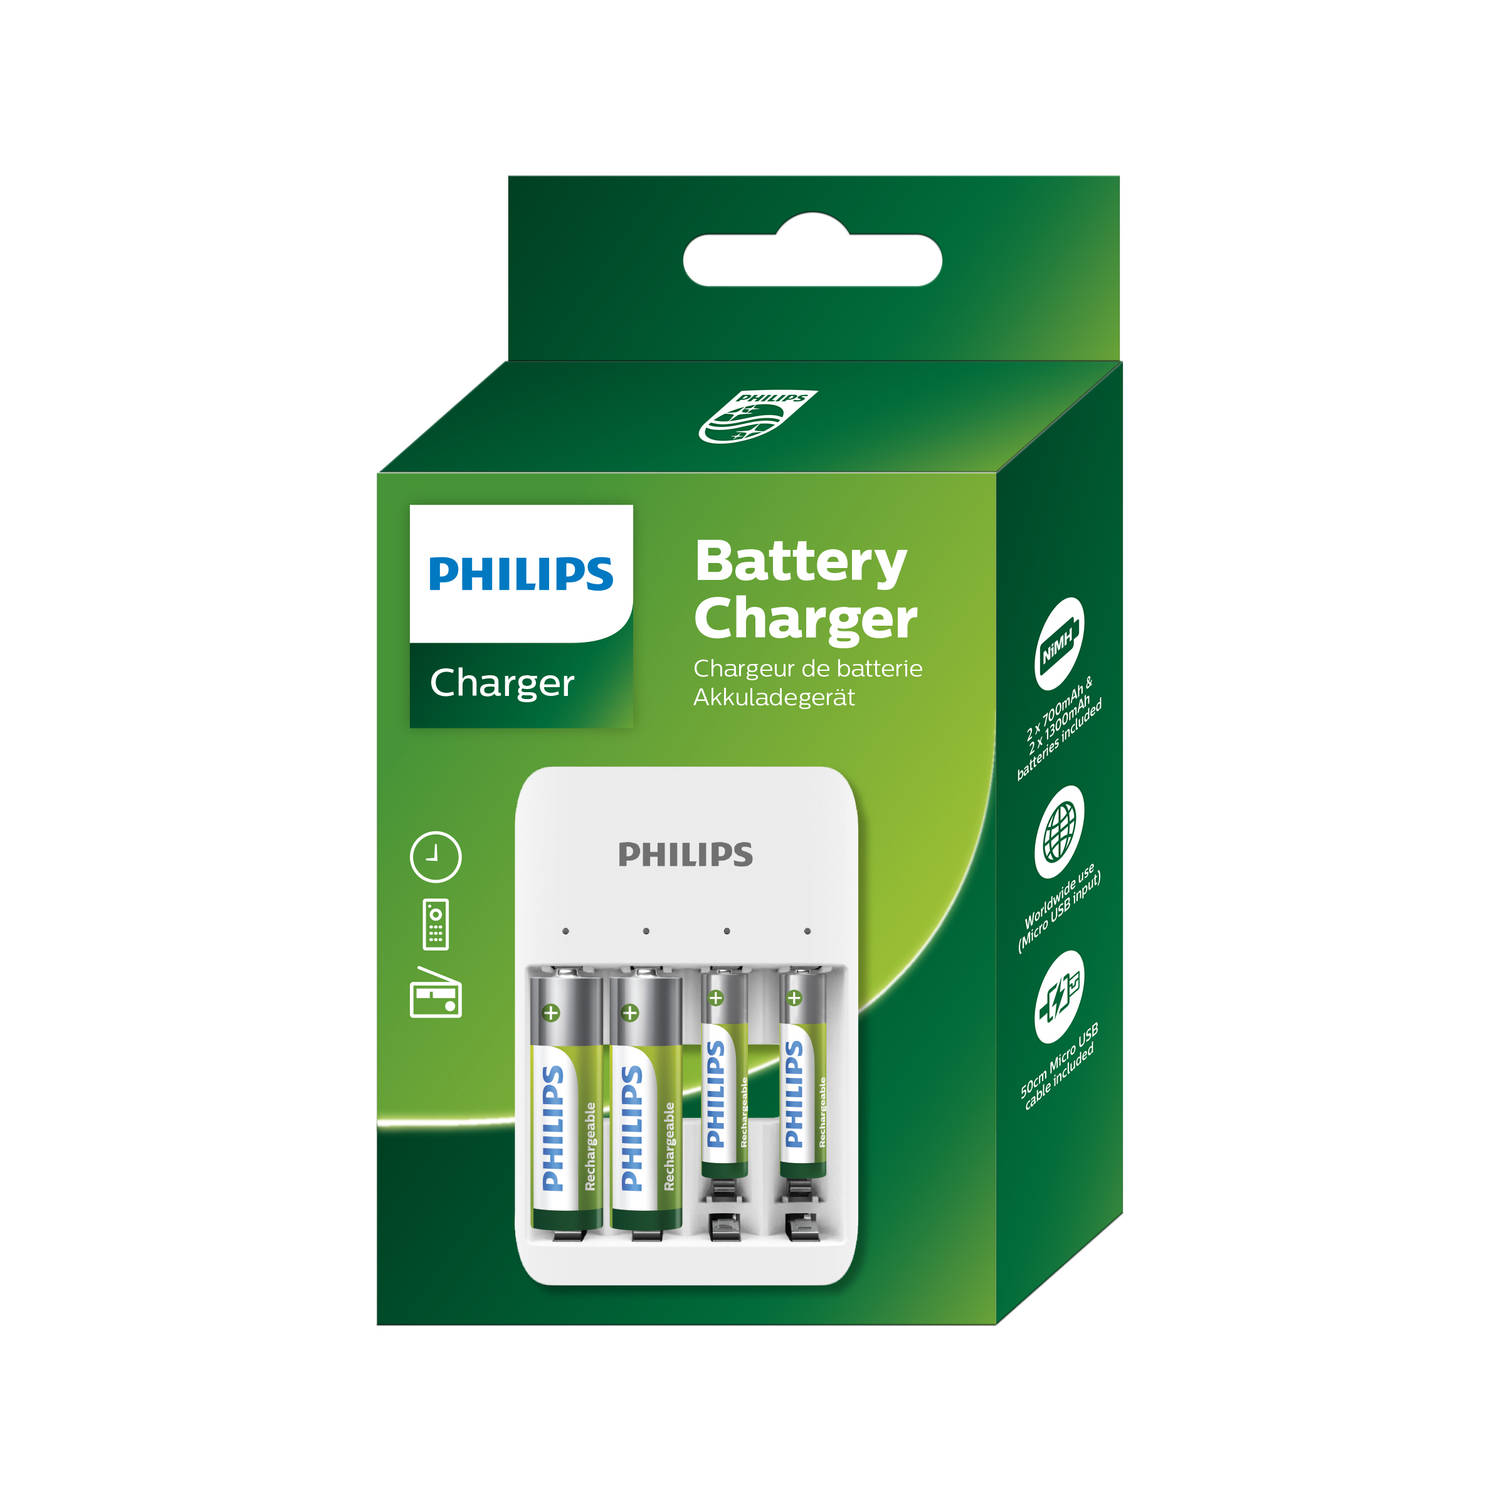 Philips Batterij Oplader - USB Oplaadbaar - Incl. AA en AAA Batterijen - Universele Batterijlader | Blokker